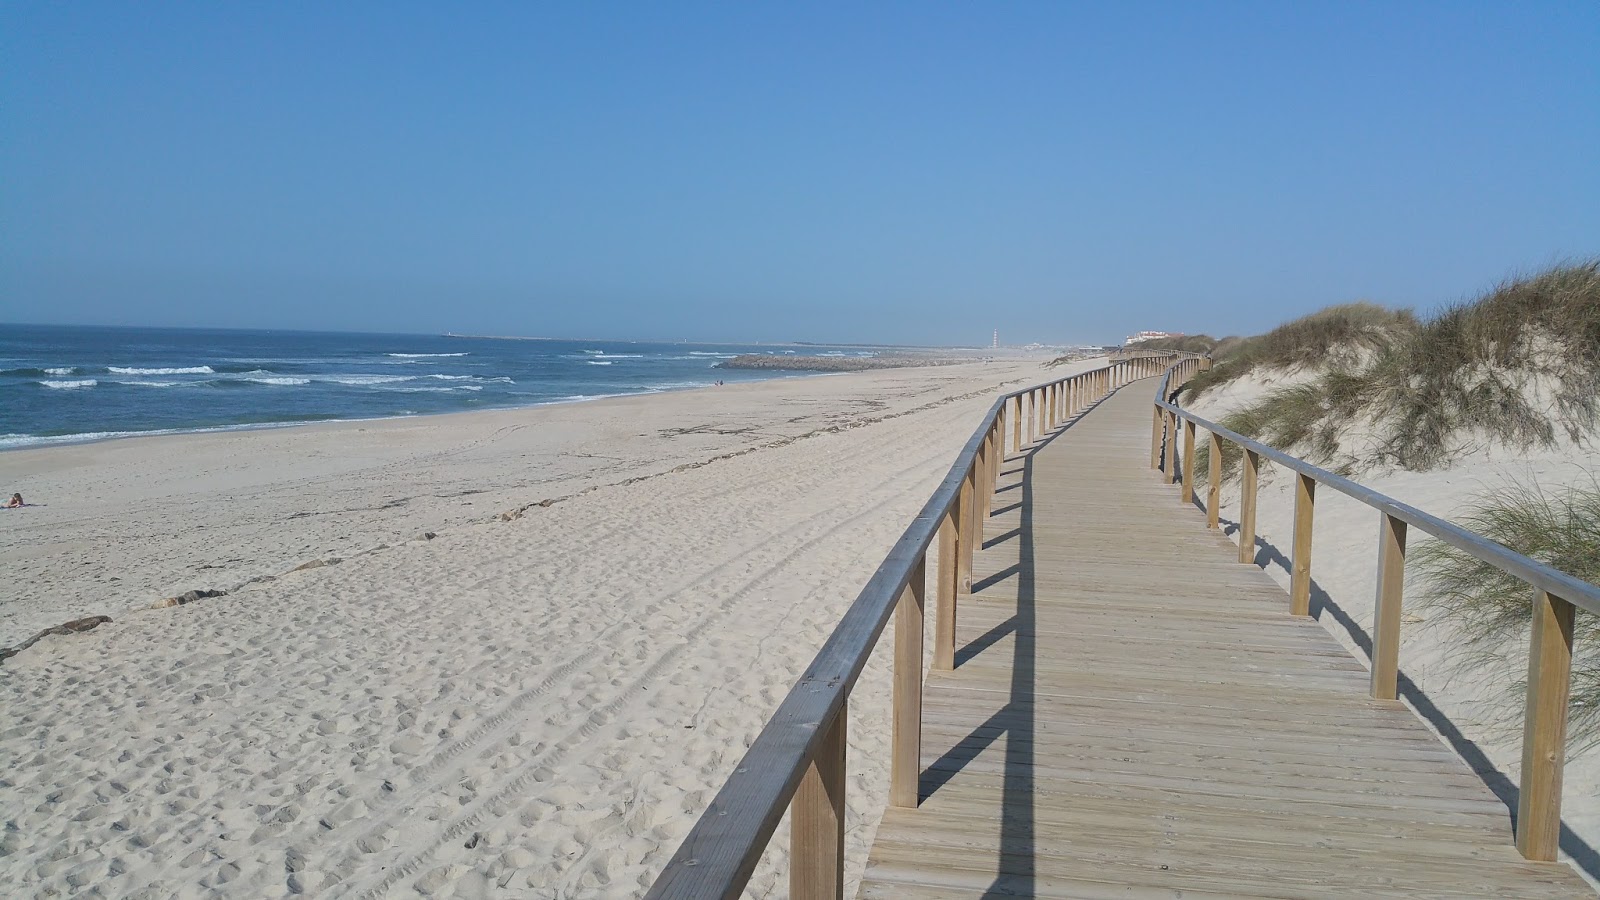 Zdjęcie Praia da Costa Nova - popularne miejsce wśród znawców relaksu